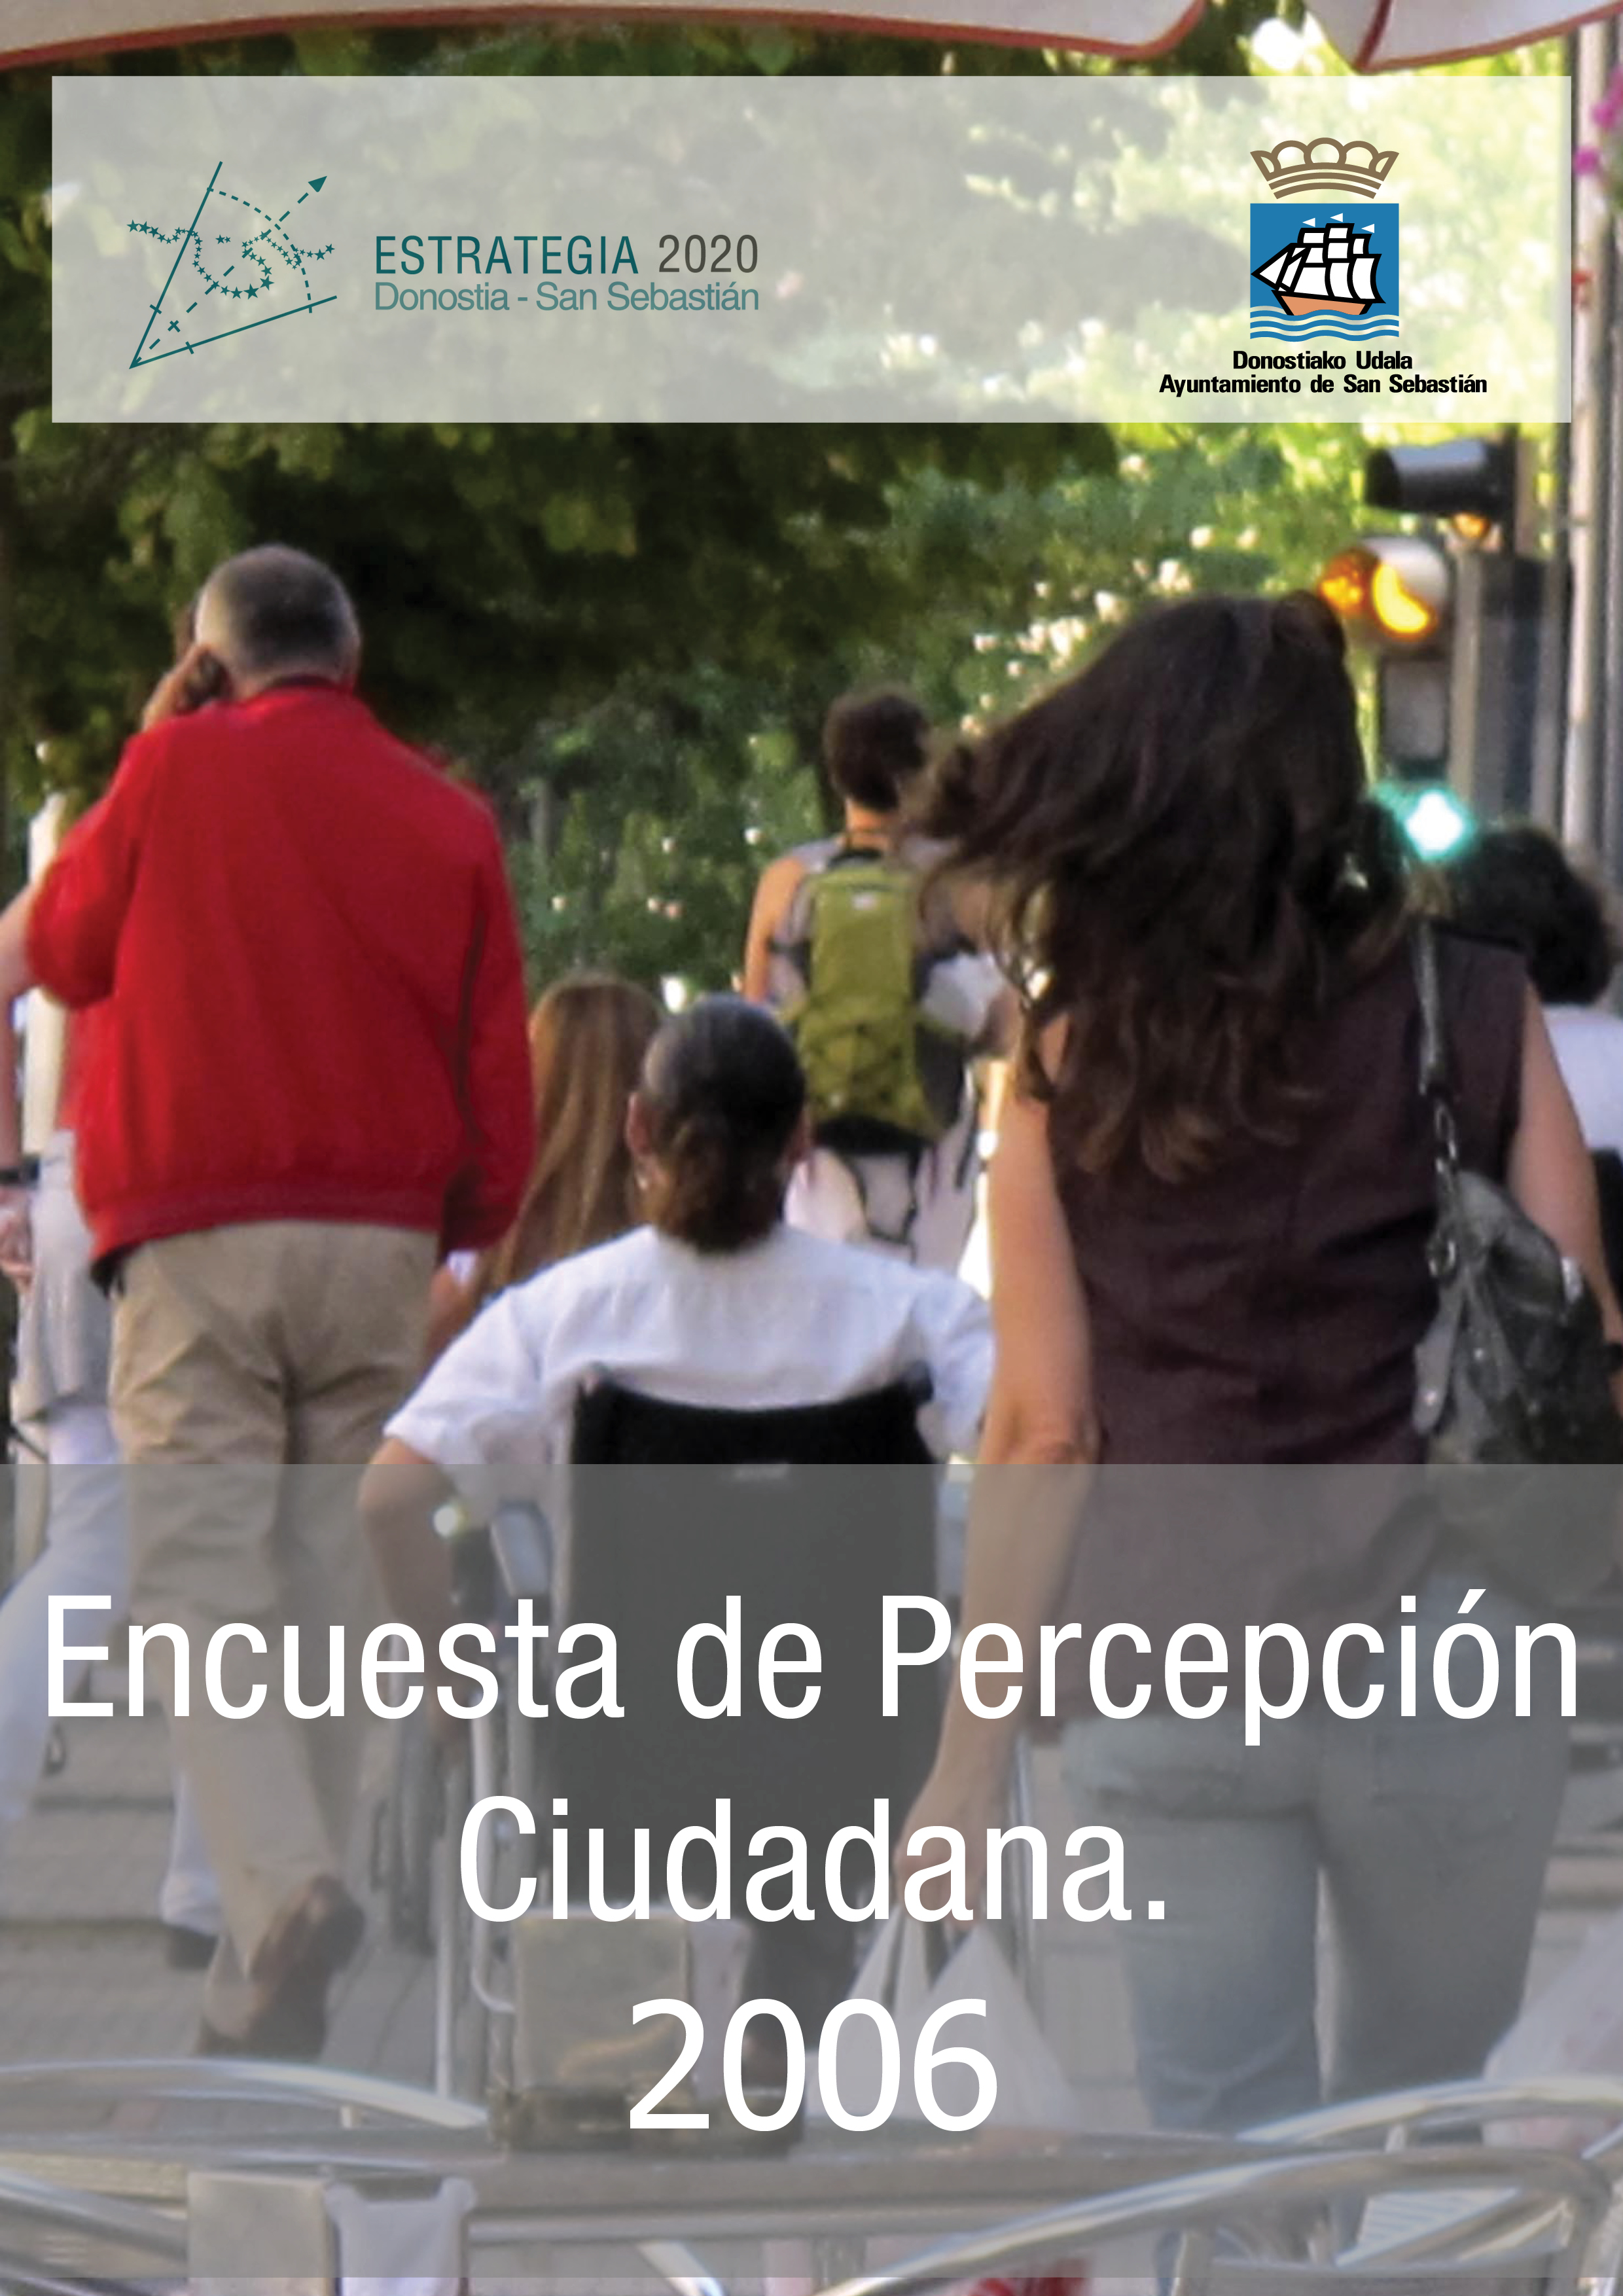 Encuesta de Percepción Ciudadana. 2006